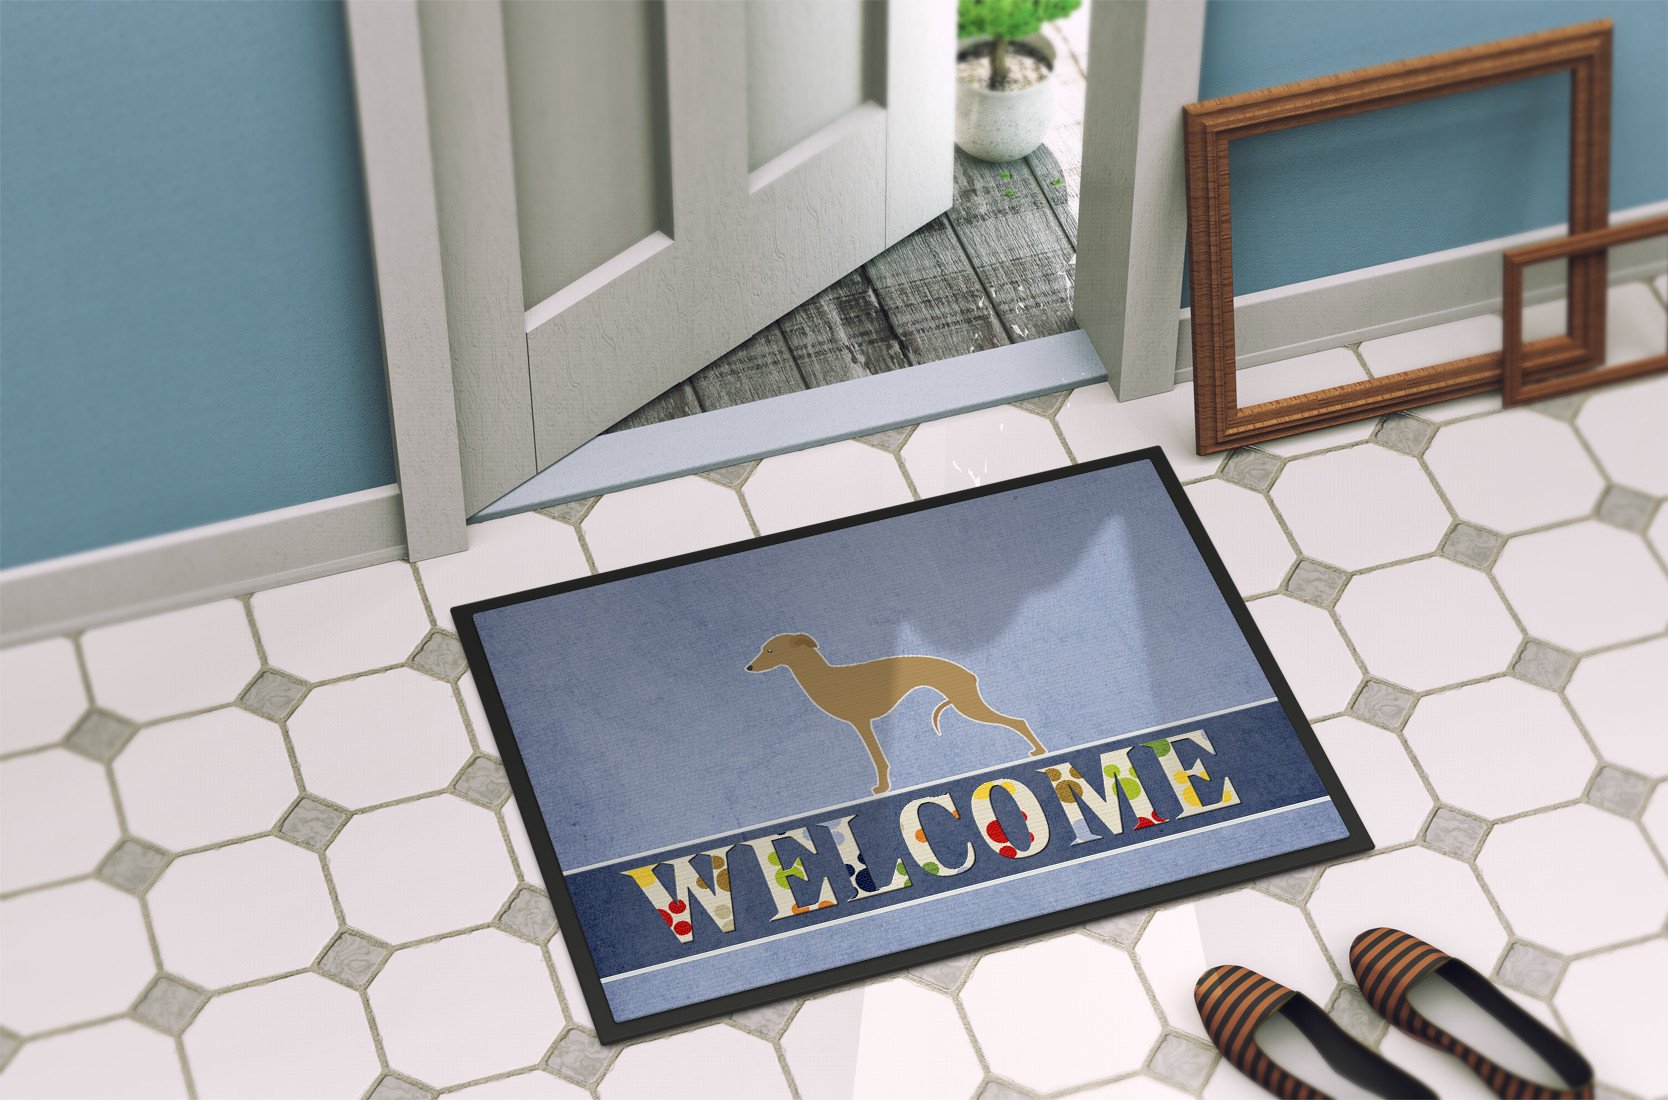 Italian Greyhound Welcome Indoor or Outdoor Mat 24x36 BB5518JMAT by Caroline's Treasures